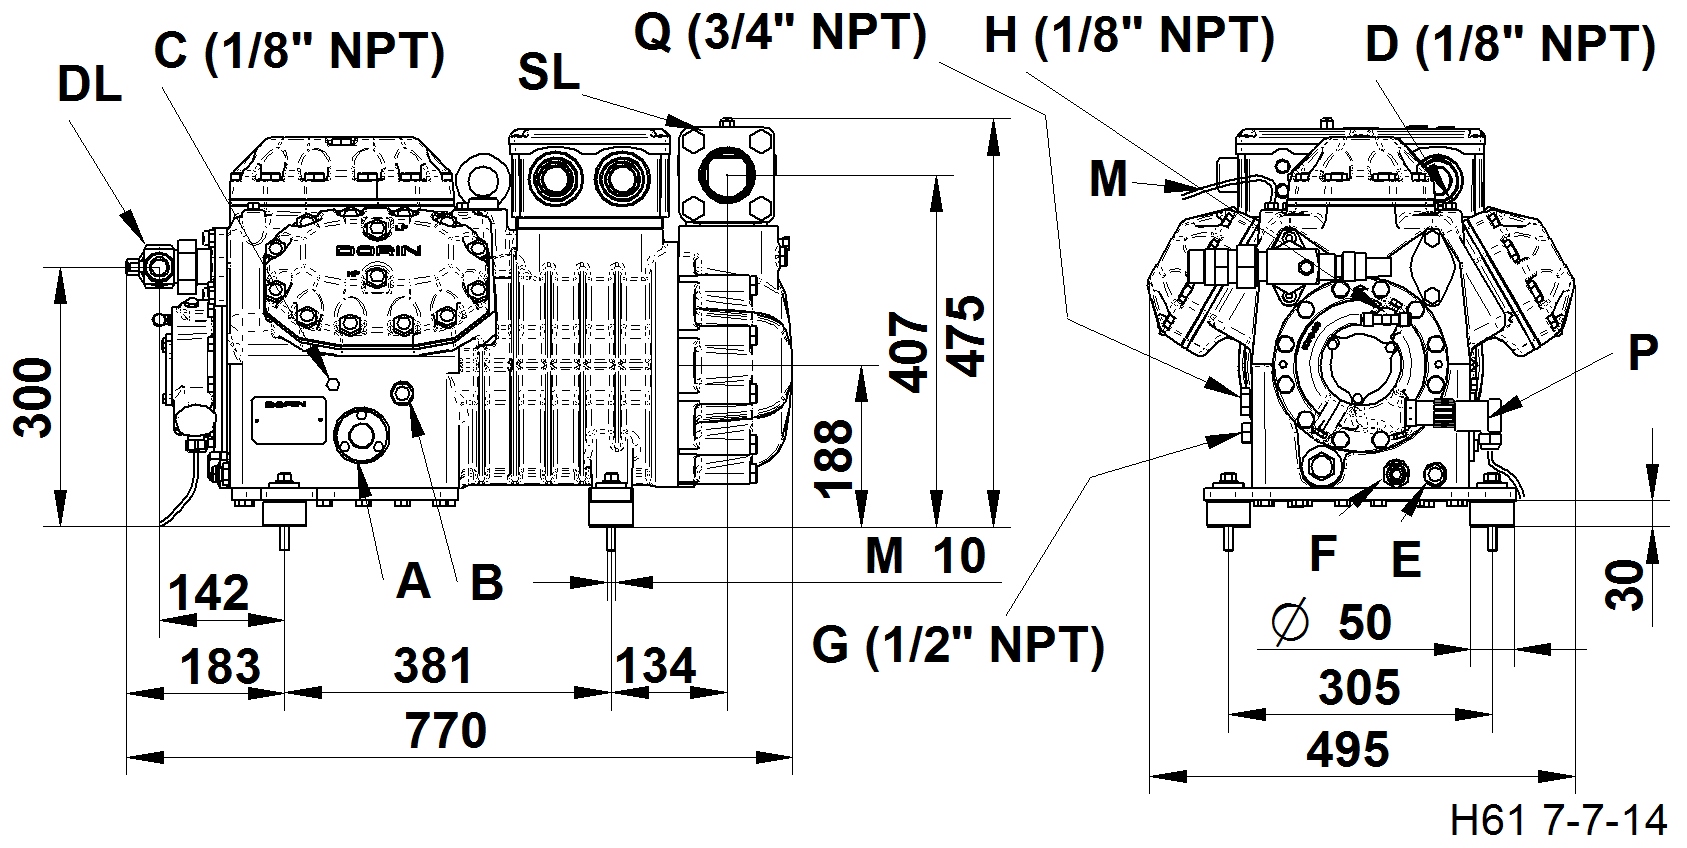 H2000EP - Compressori Semiermetici per R134a Serie HEP | DORIN